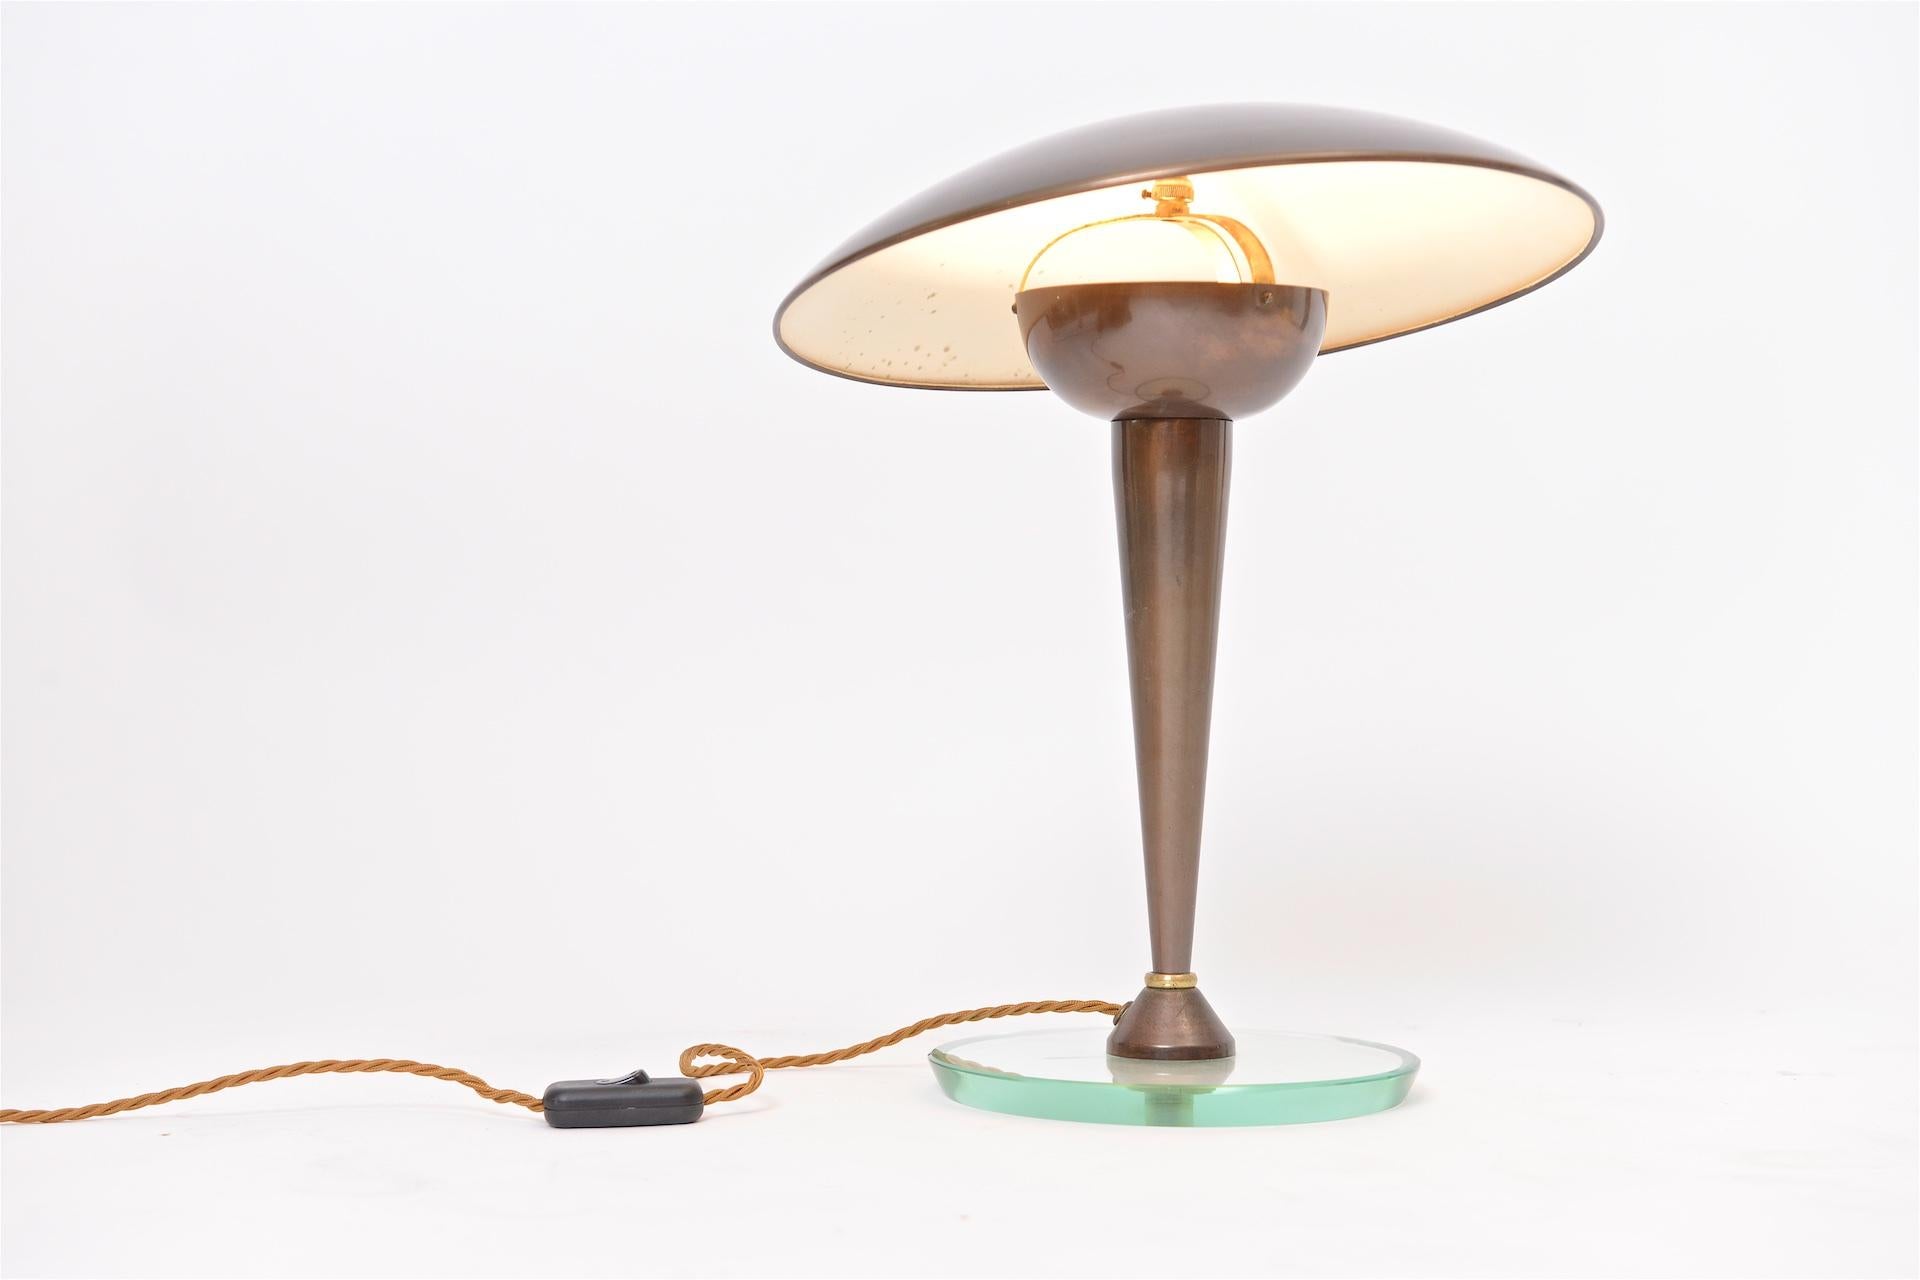 Italian Oscar Torlasco Style Table Light with Articulated Shade